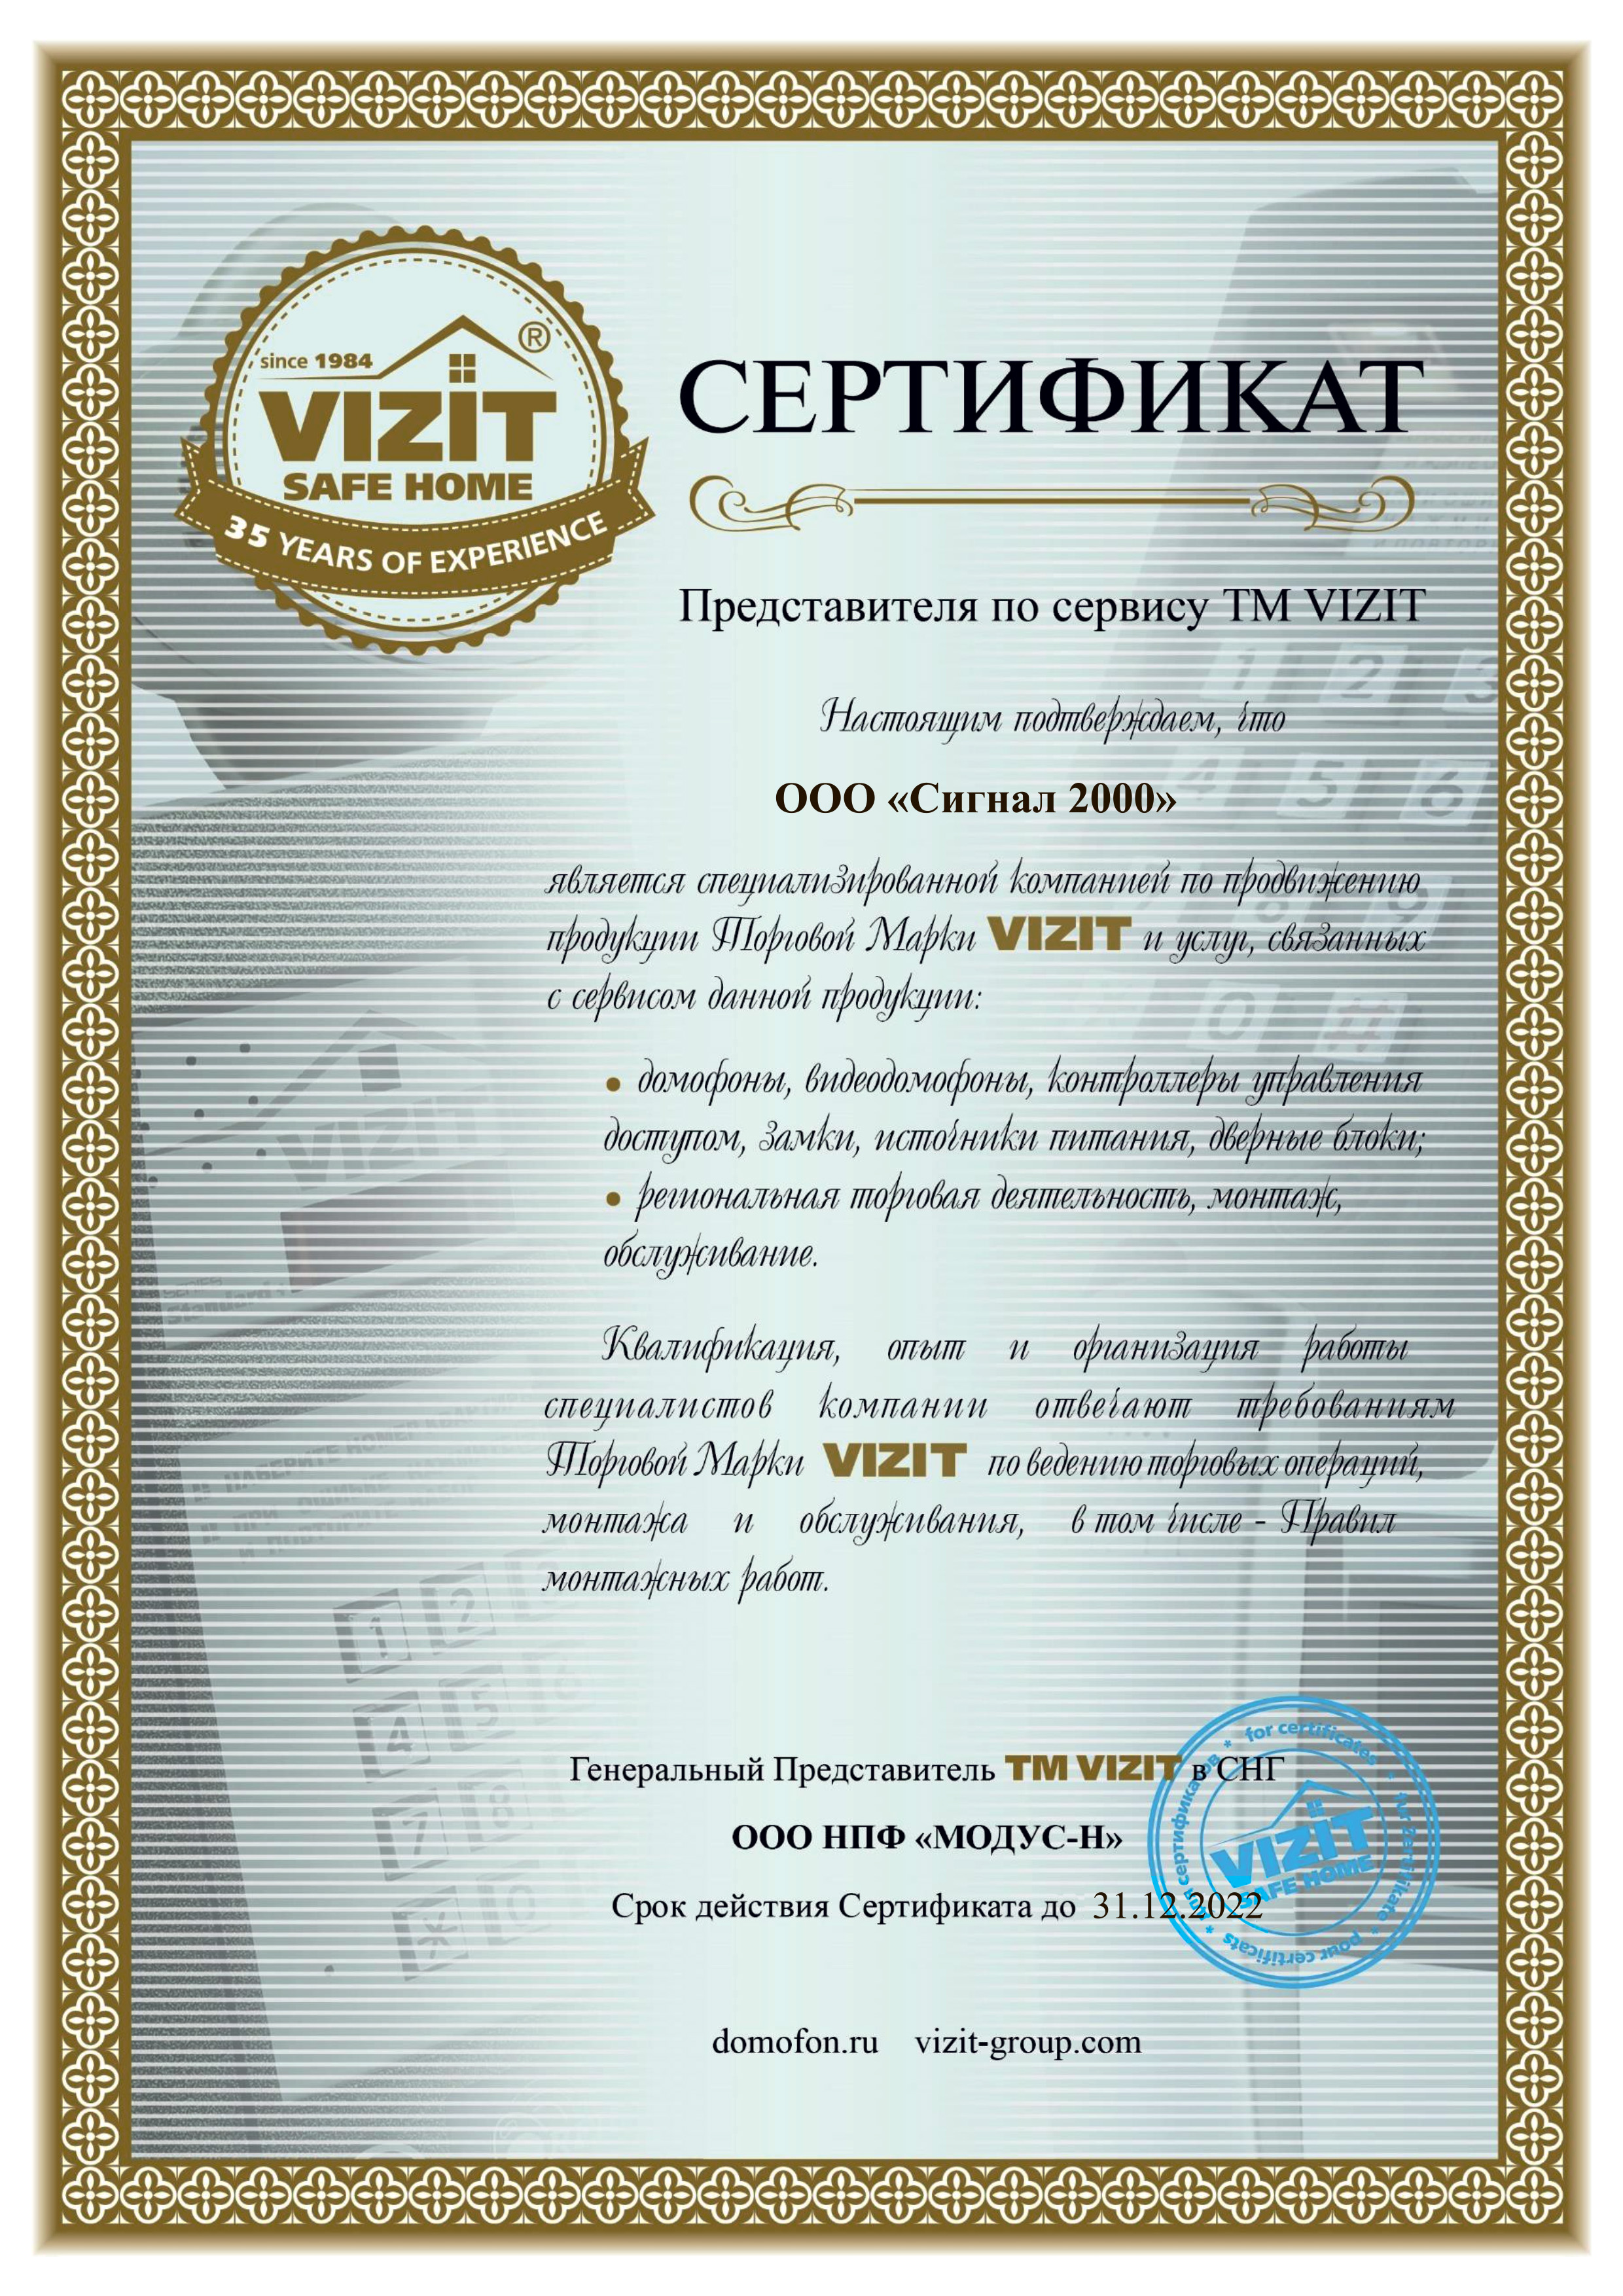 Сигнал 2000 каменск уральский. Сертификат на визу. ООО ТМК пилот Тюмени. DV производства wisi сертификат.